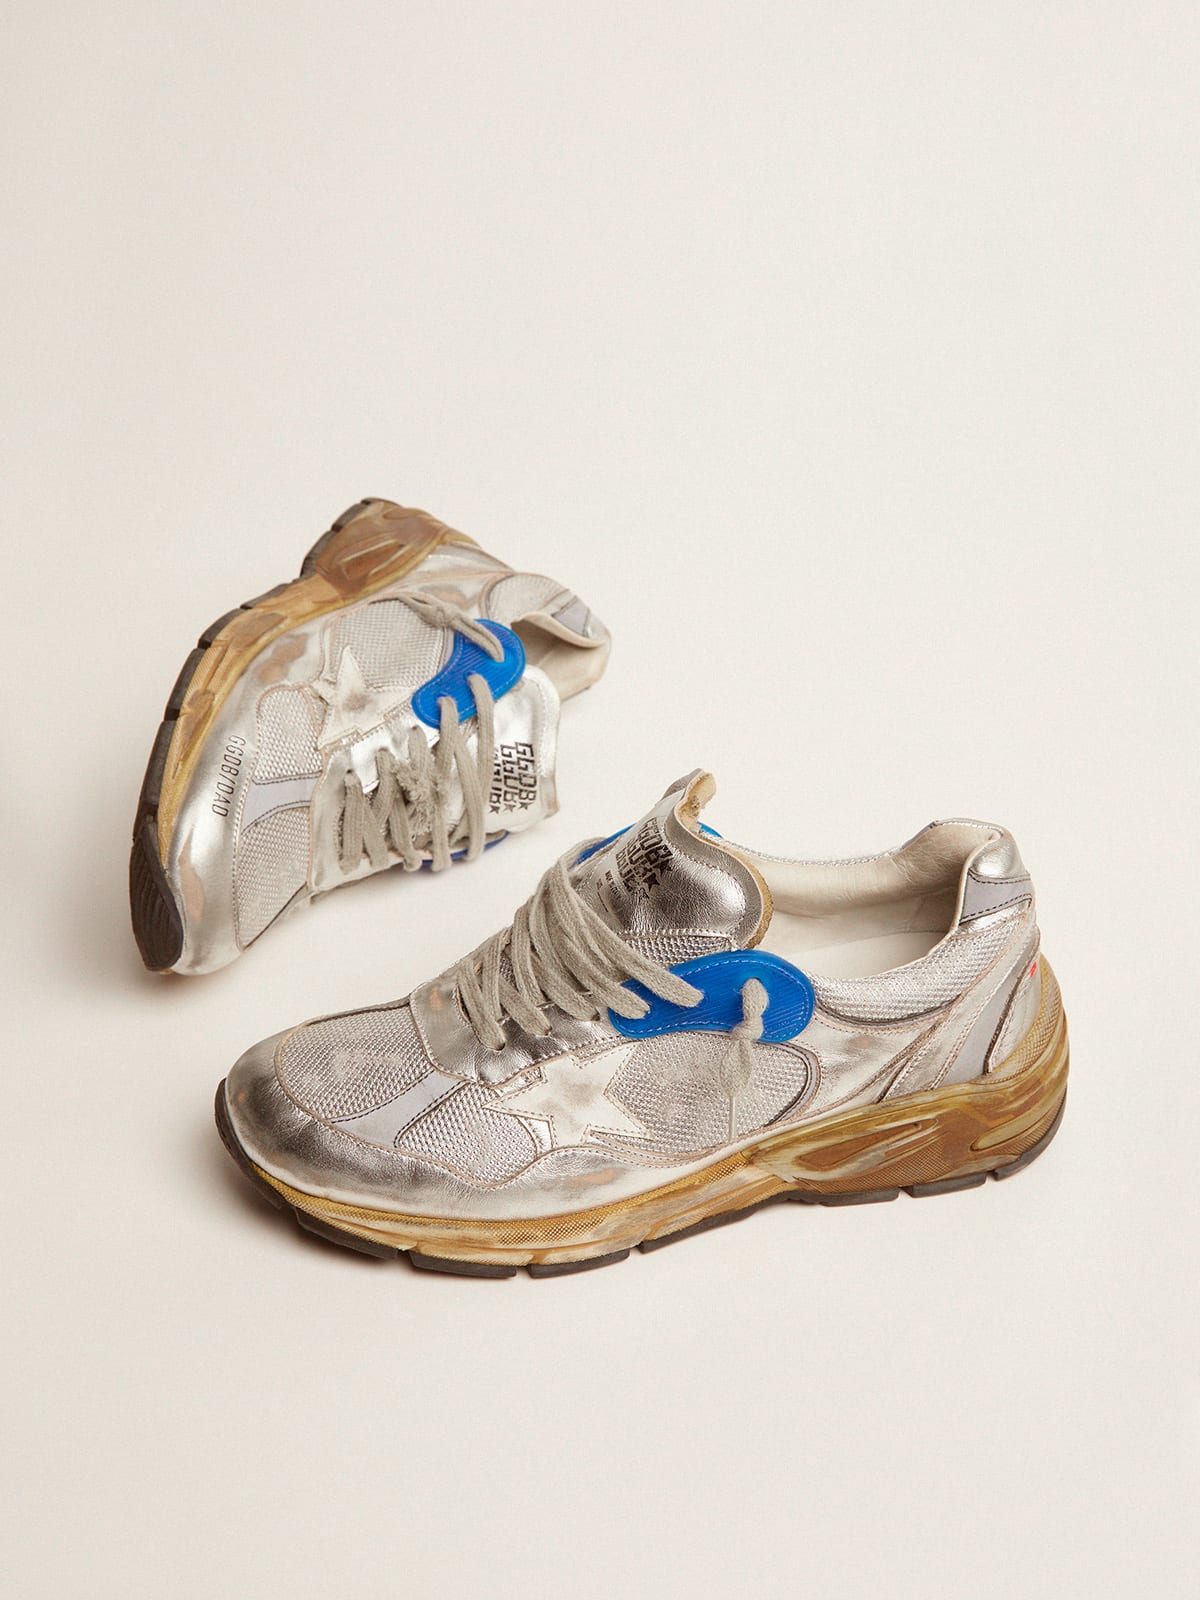 Golden Goose - Women’s silver Dad-Star sneakers in 